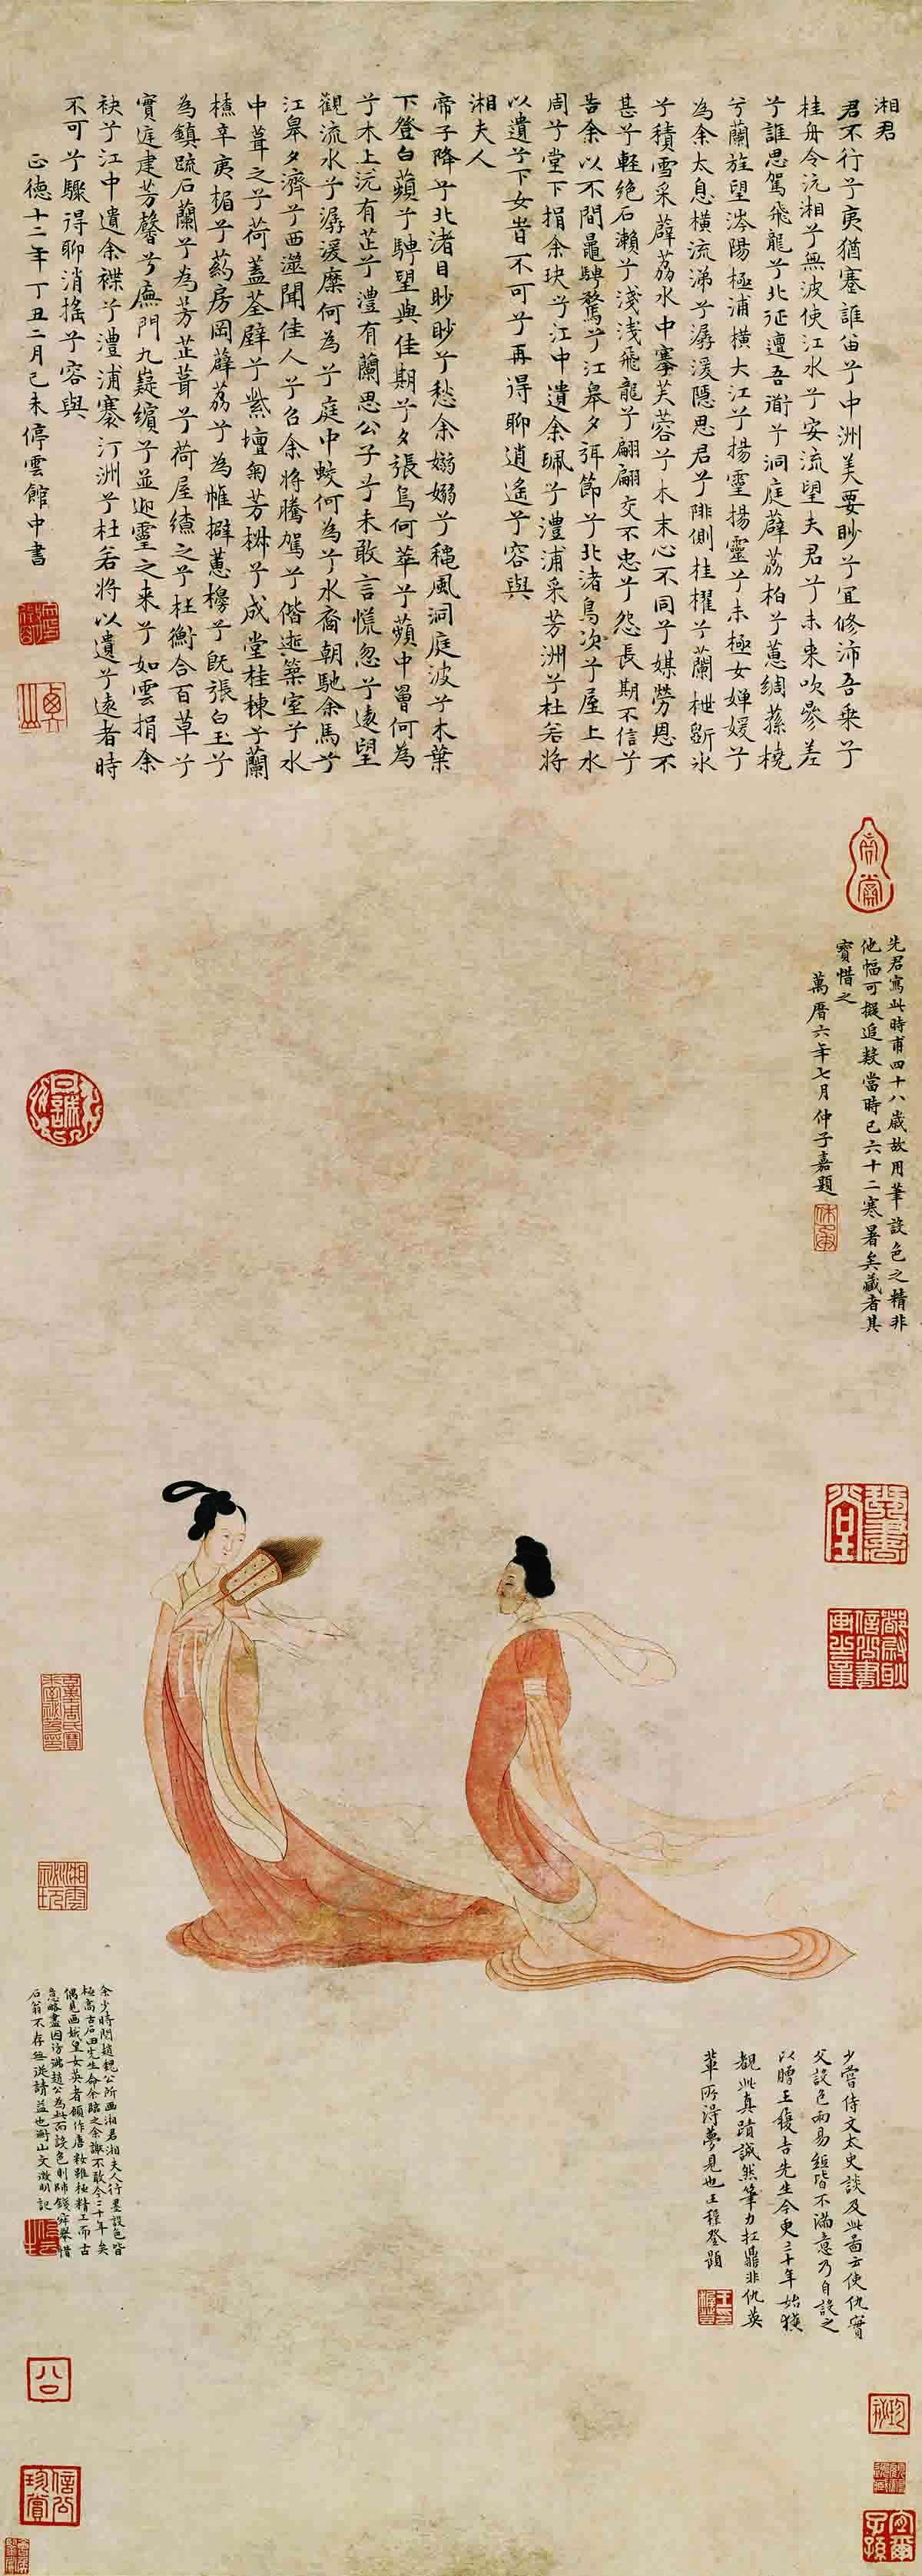 明 文徵明 湘君湘夫人图 纸本100.8x35.6